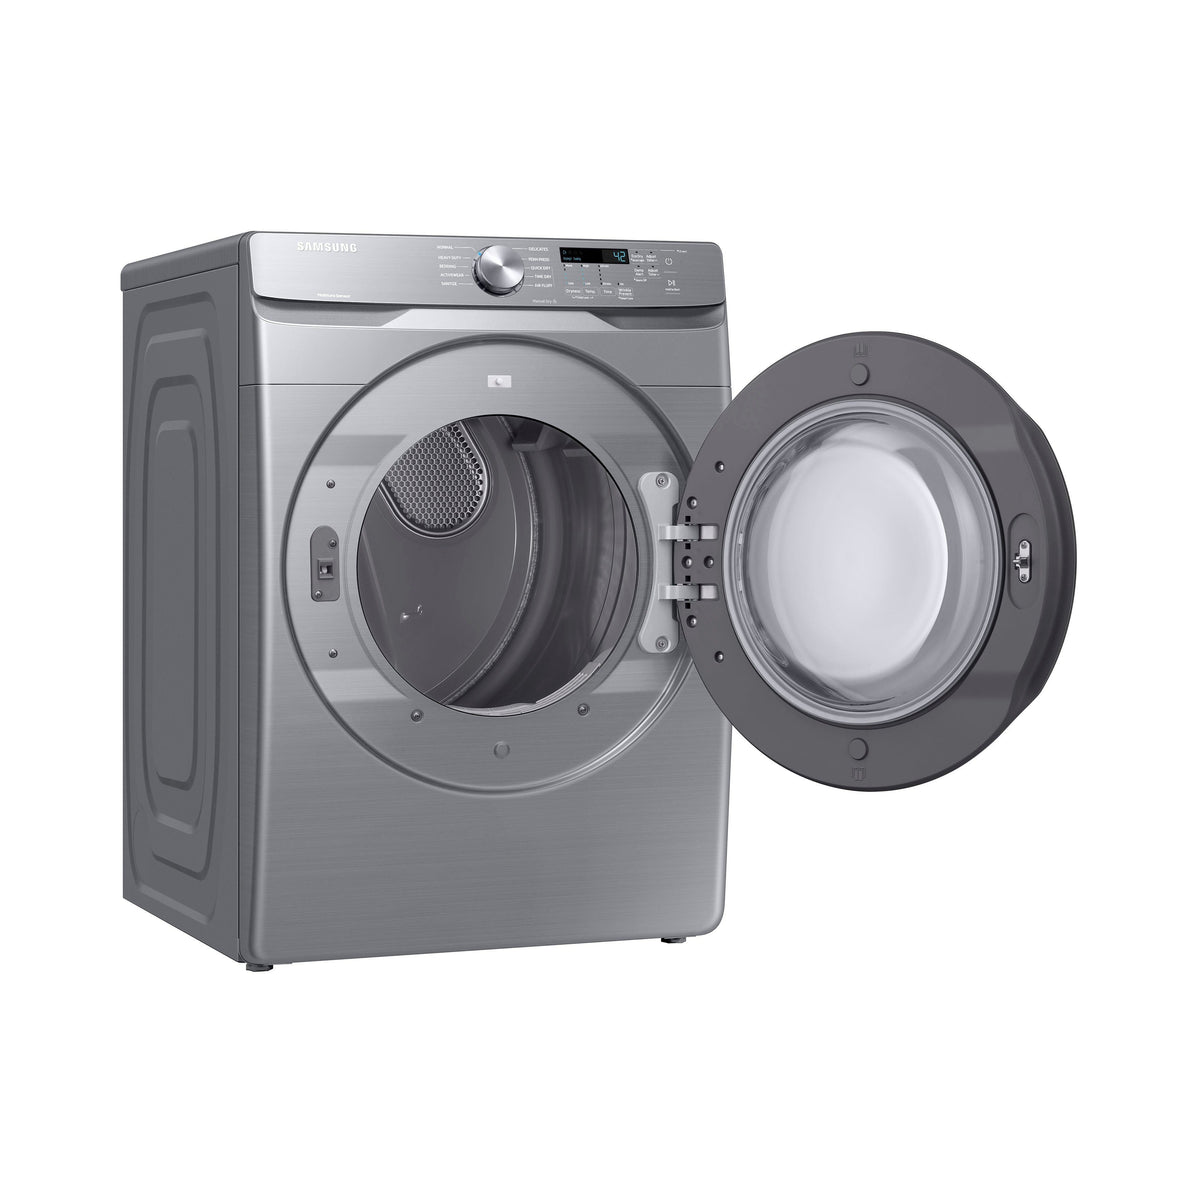 SAMSUNG DVE45R6100P/A3 7.5 Cu. Ft. Stackable Electric Dryer - Platinum